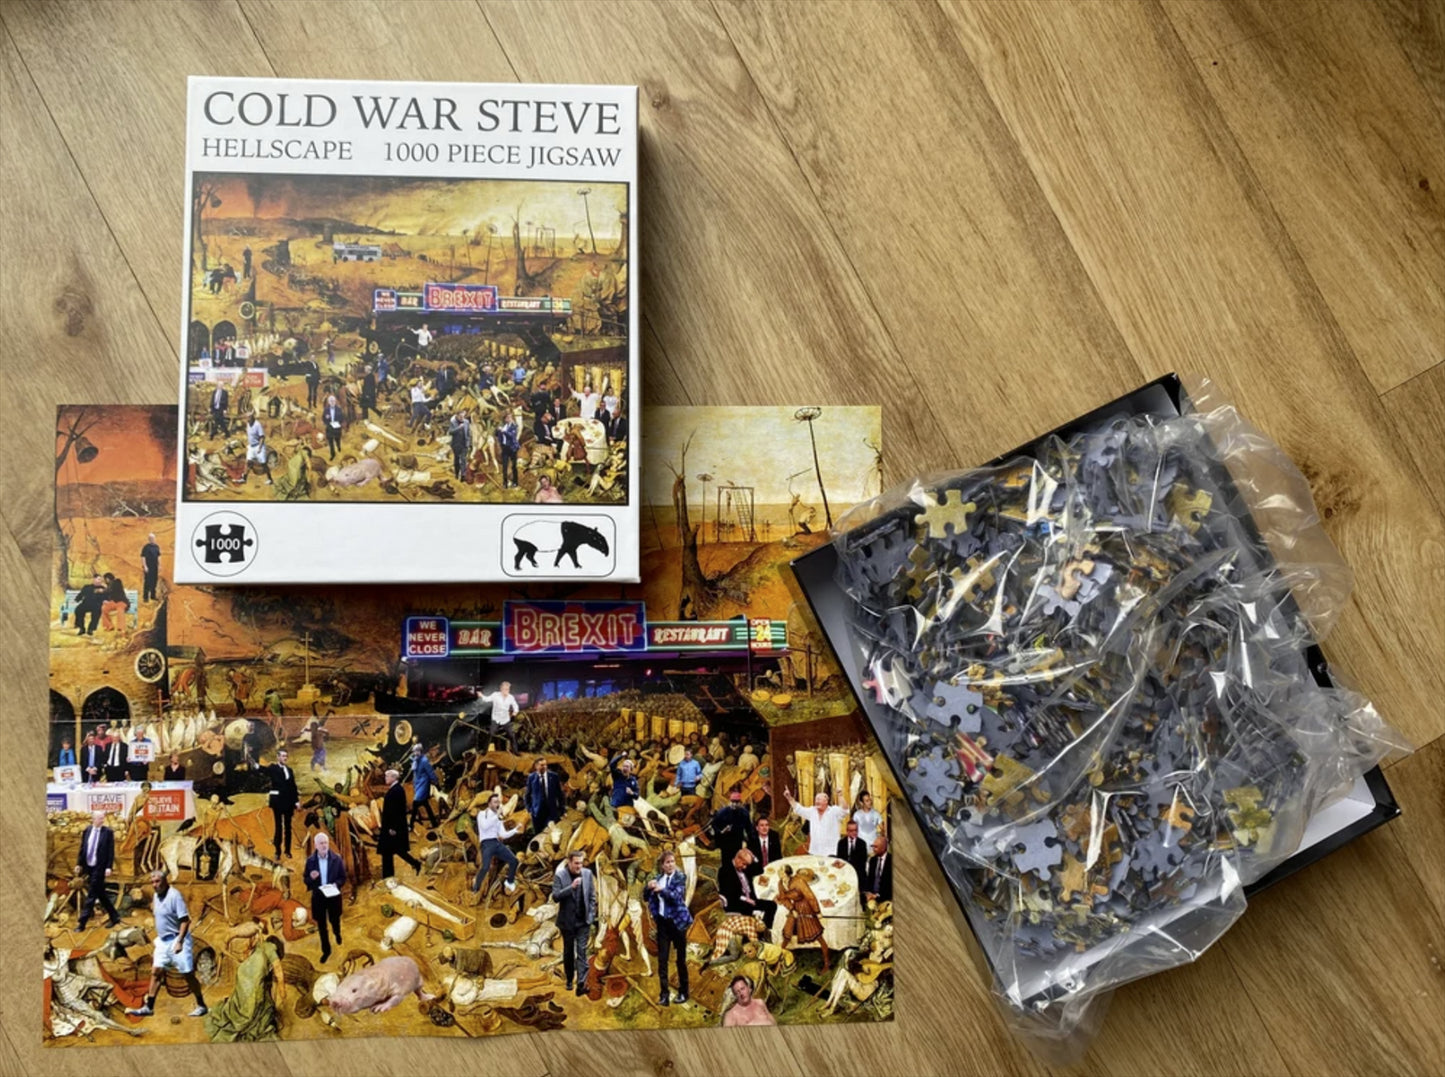 Cold War Steve 'Hellscape' 1000 Piece Jigsaw